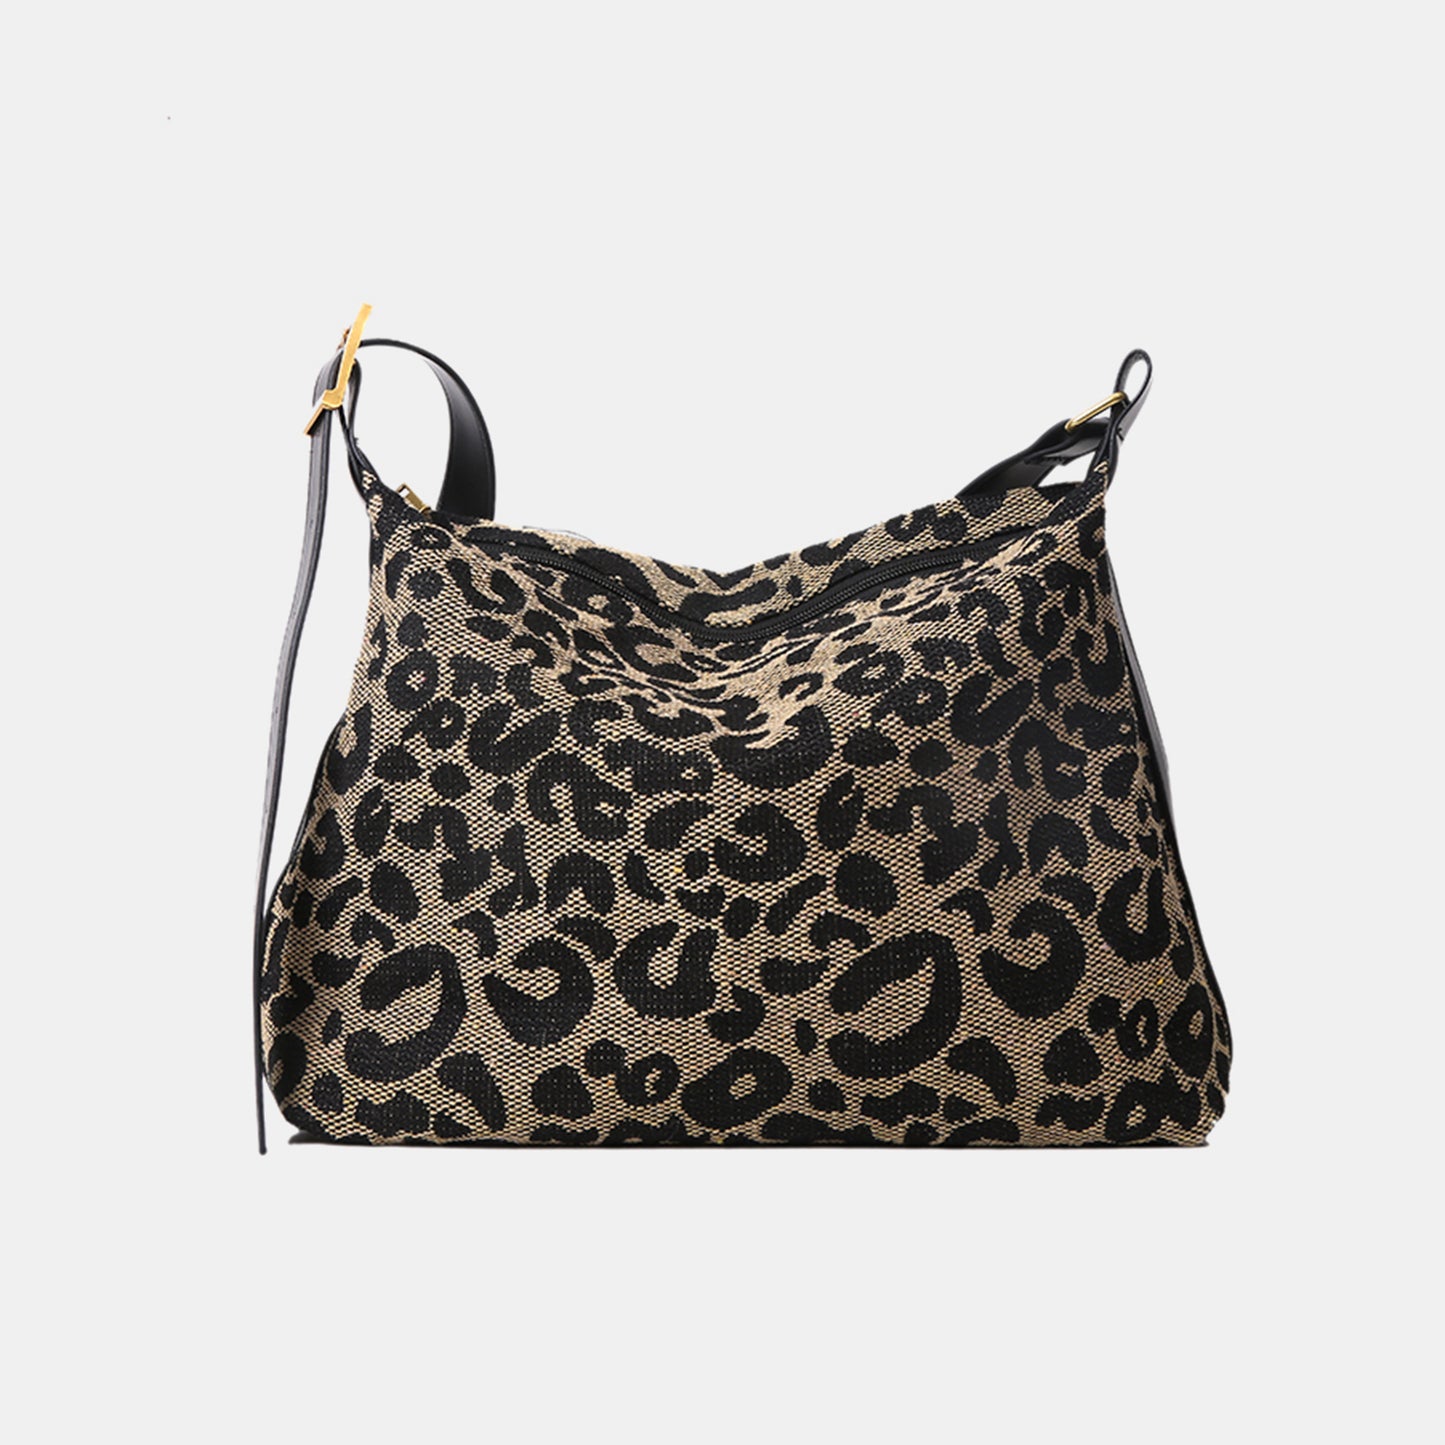 PU Leather Leopard Shoulder Bag Black One Size